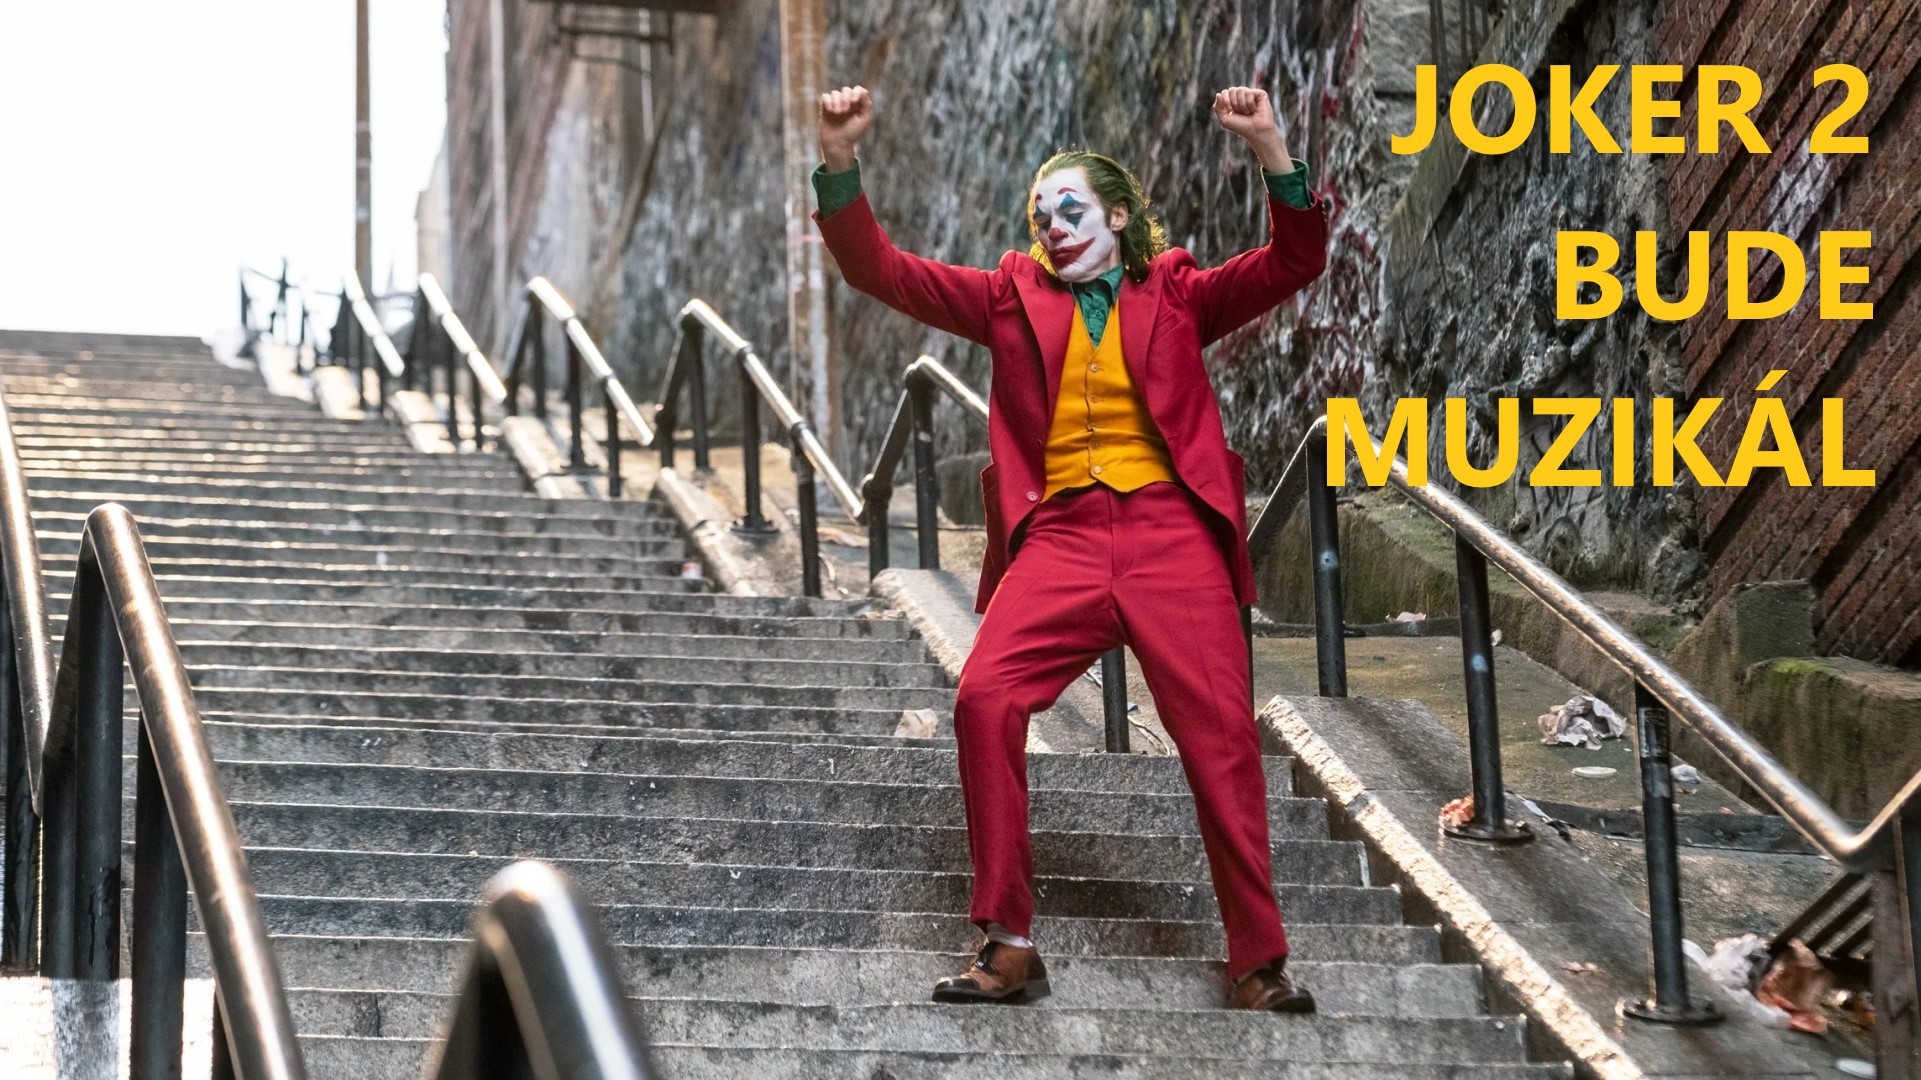 Joker 2 jako muzikál, prodloužený Spider-Man a další filmové novinky v našem podcastu | Fandíme filmu